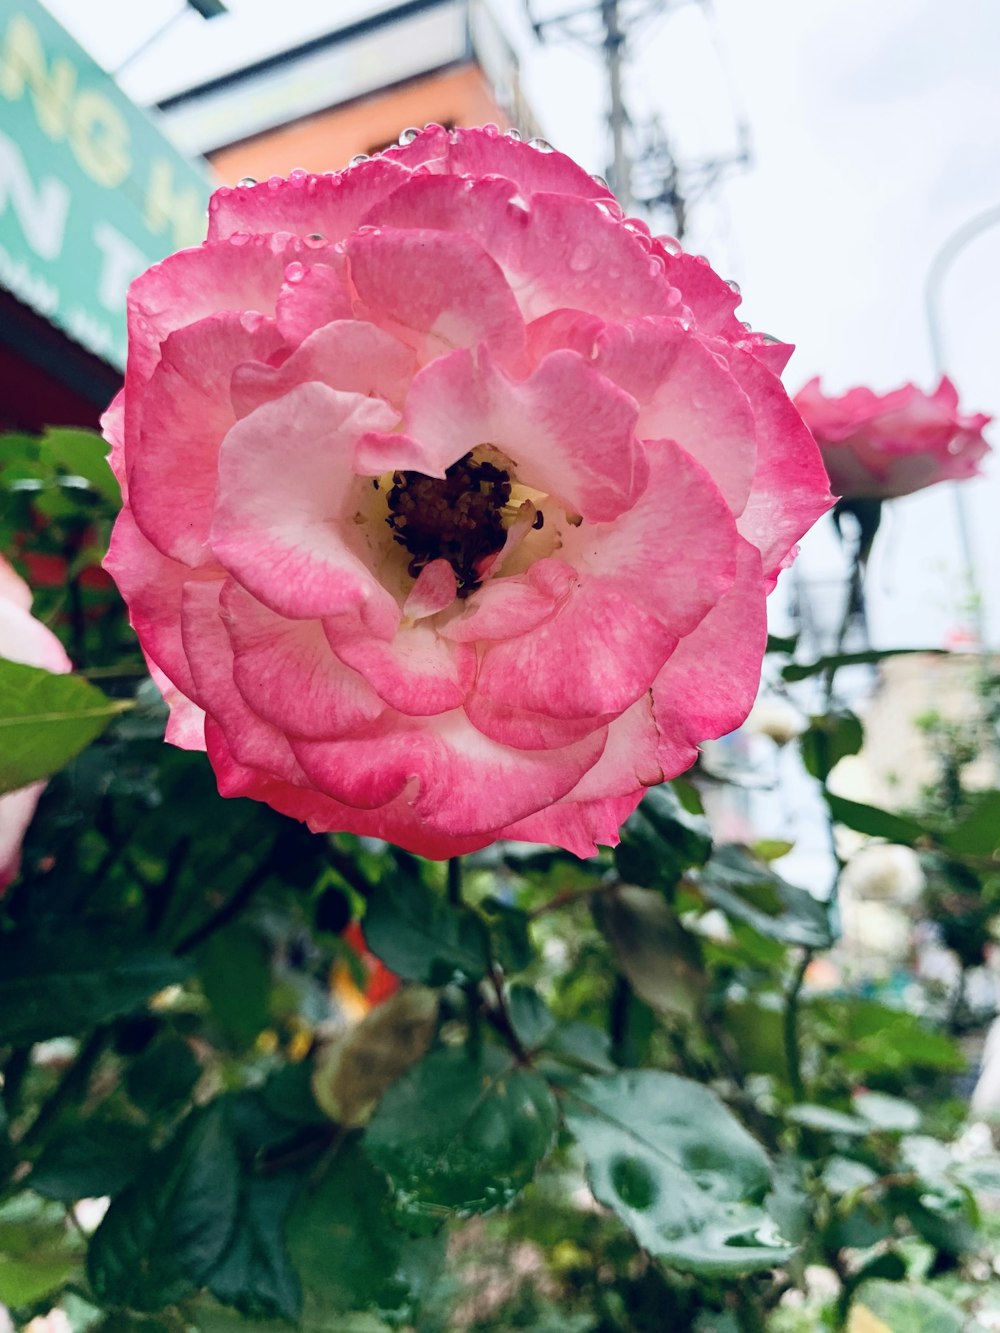 그 안에 꿀벌이 있는 분홍색 꽃